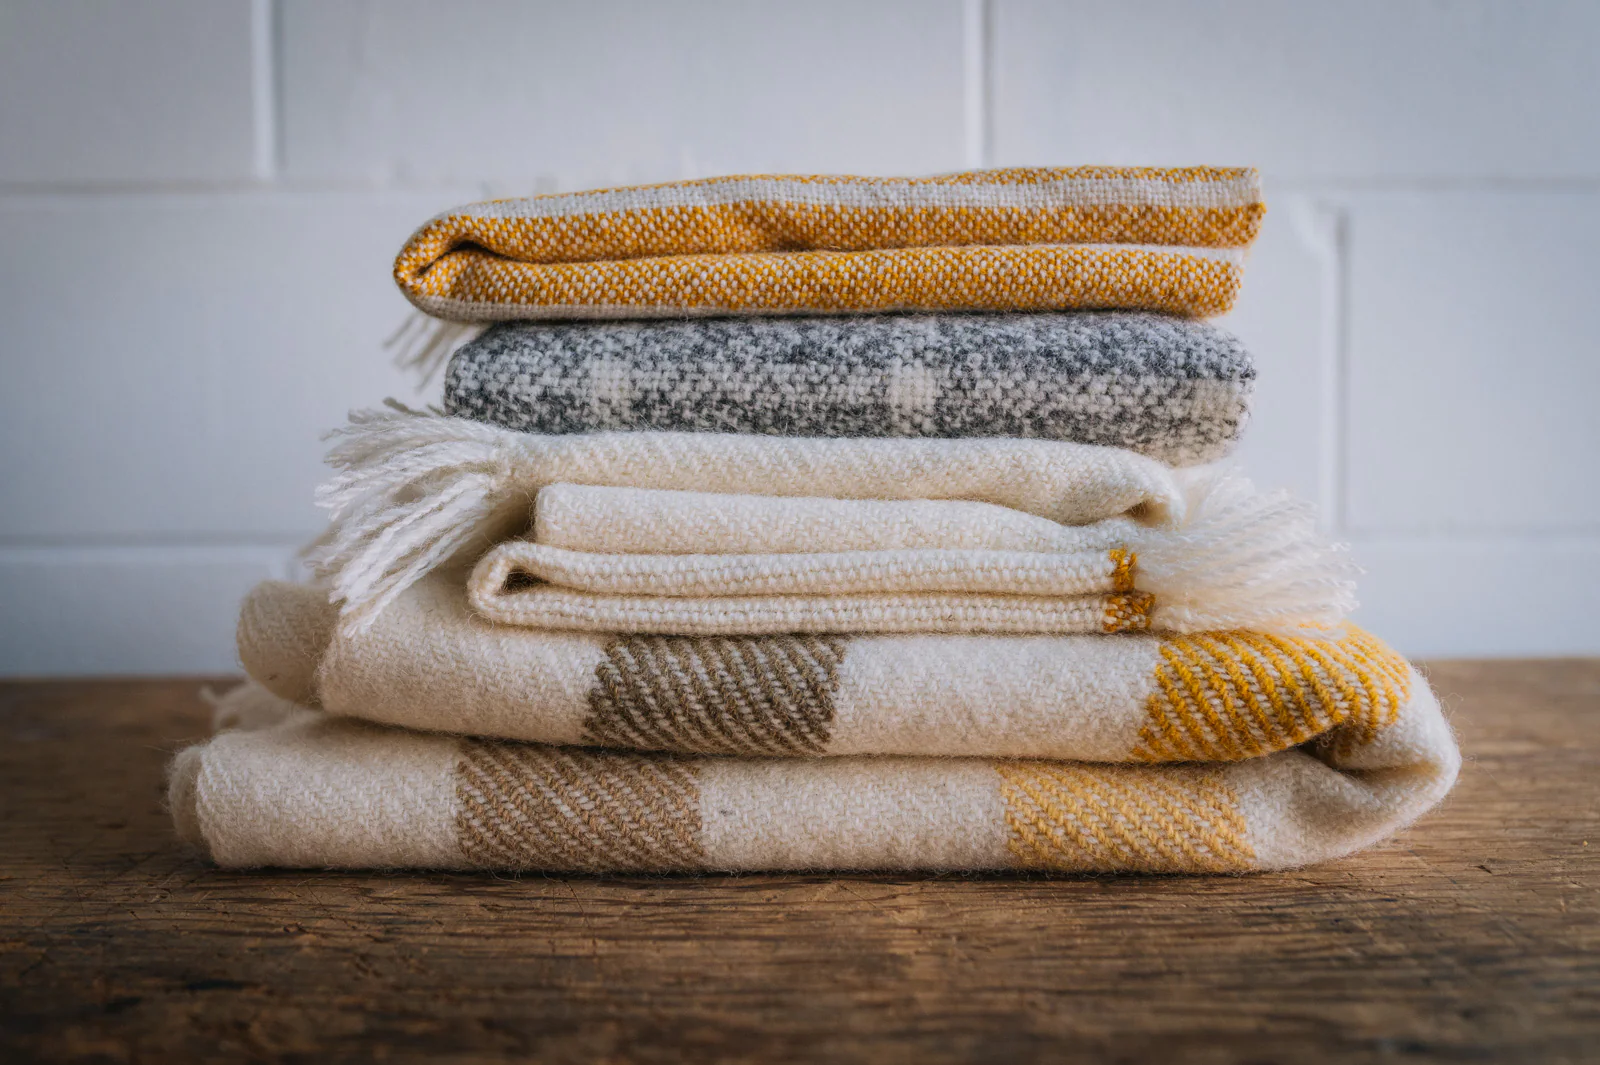 Buy Wool Scarf After Seeing Varieties Online At Stores